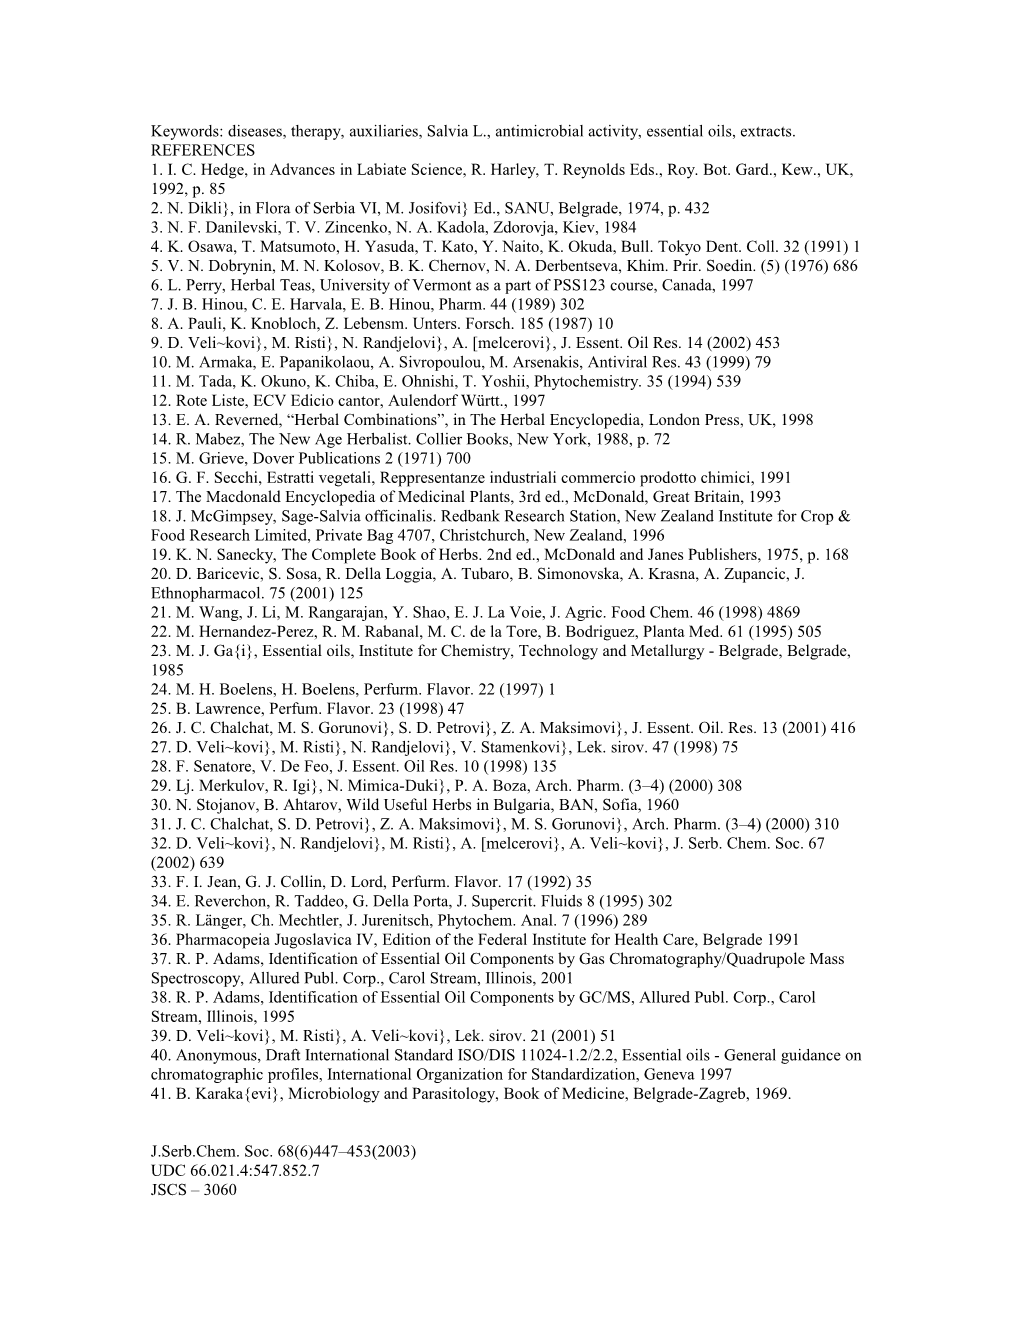 J.Serb.Chem.Soc. Vol. 68, No. 6 (2003)